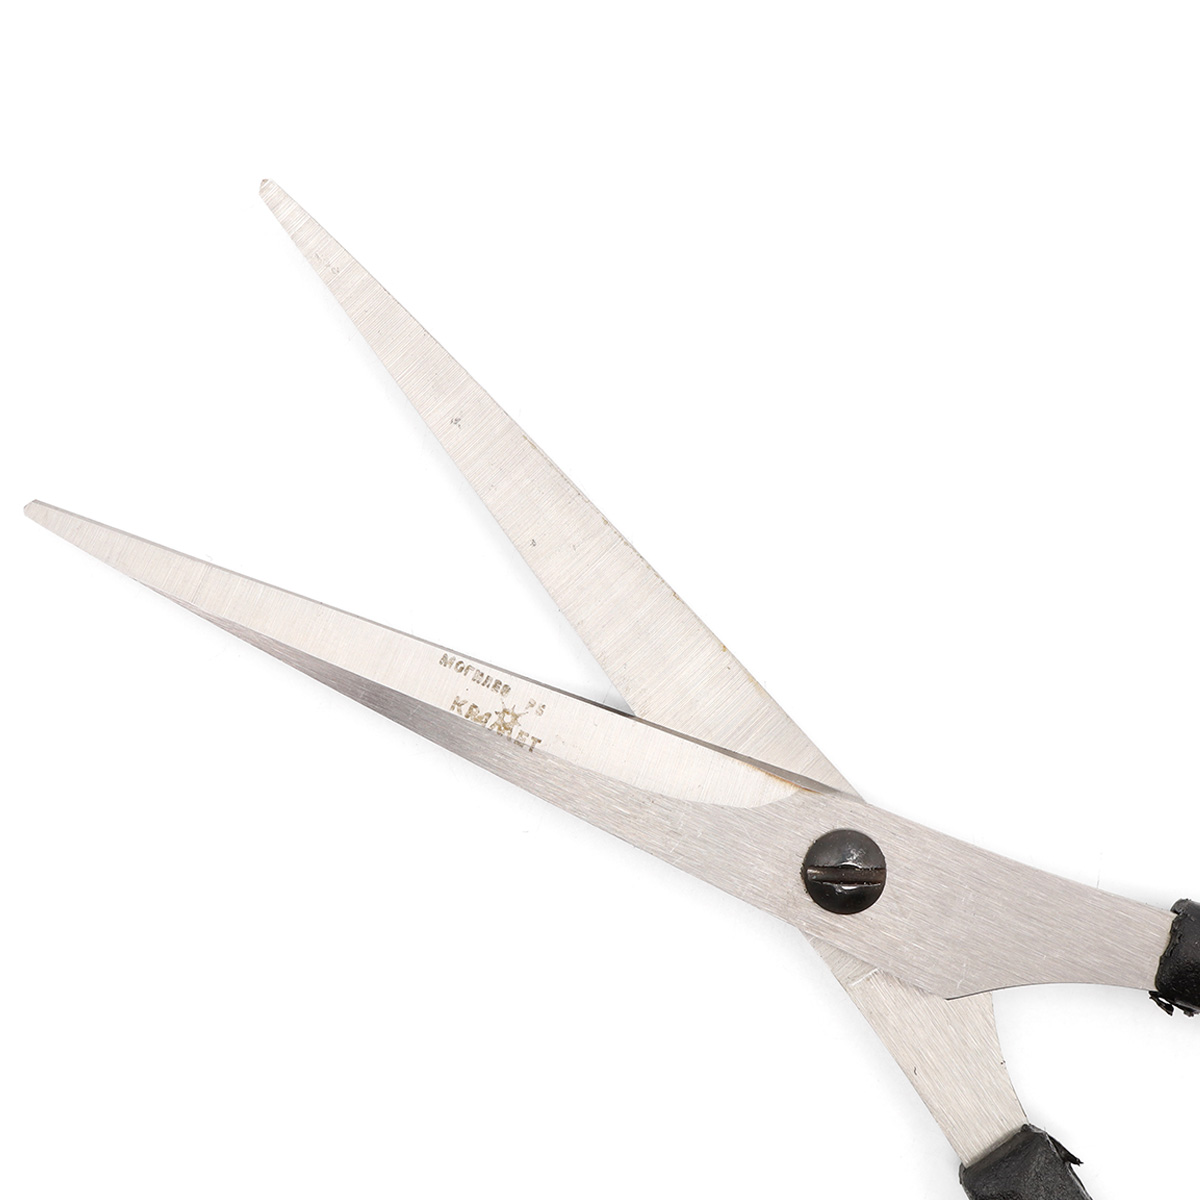 Ножницы универсальные KARMET стальные с удобными пластиковыми ручками и винтом для регулировки хода 16 см - фото 2